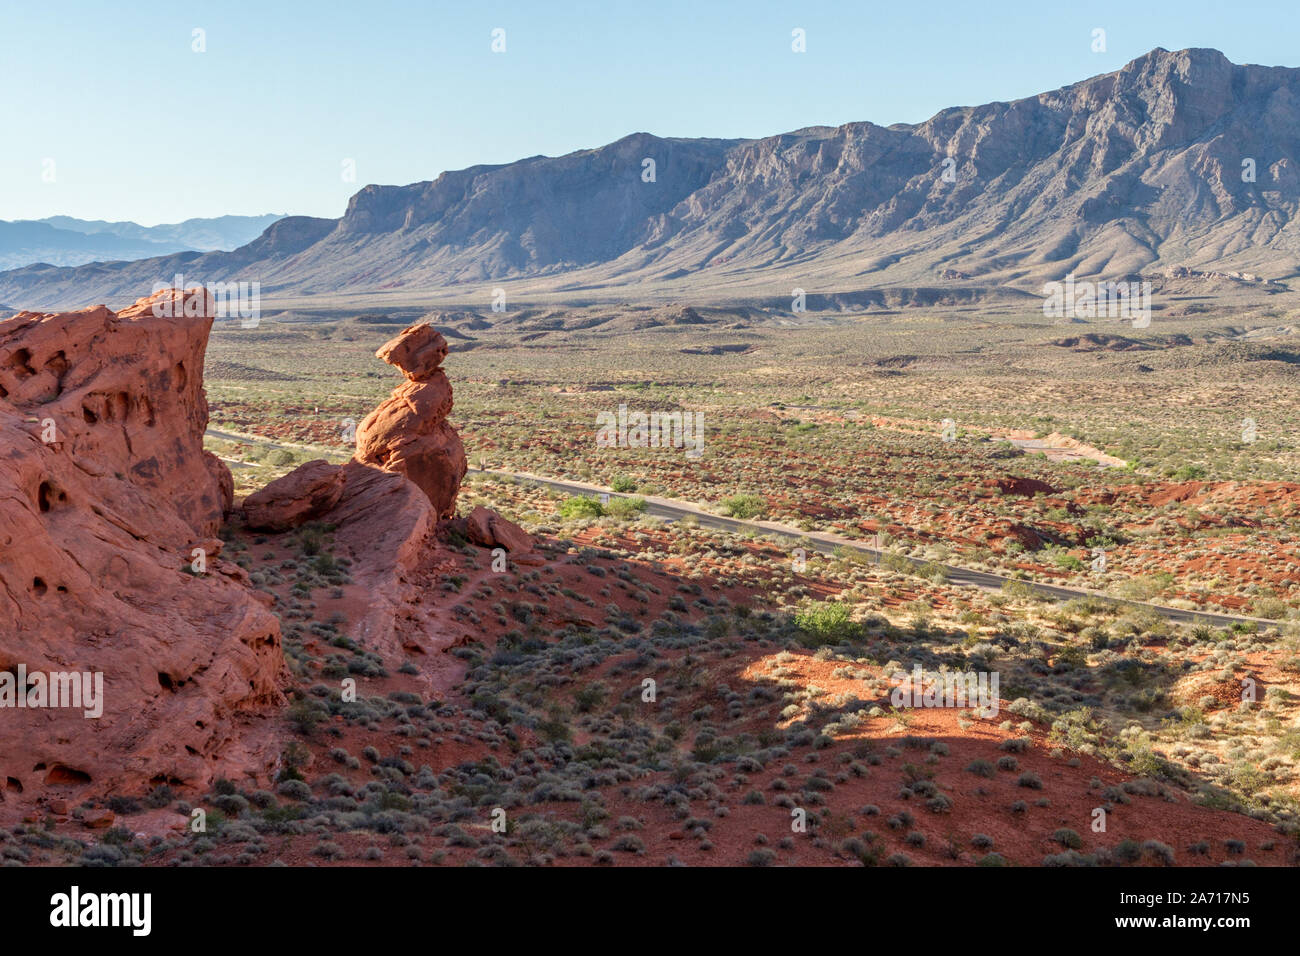 Sentinelle rouge - Balanced Rock domine la vallée. Vallée de Feu Park, Moapa Valley, Nevada, USA. Banque D'Images